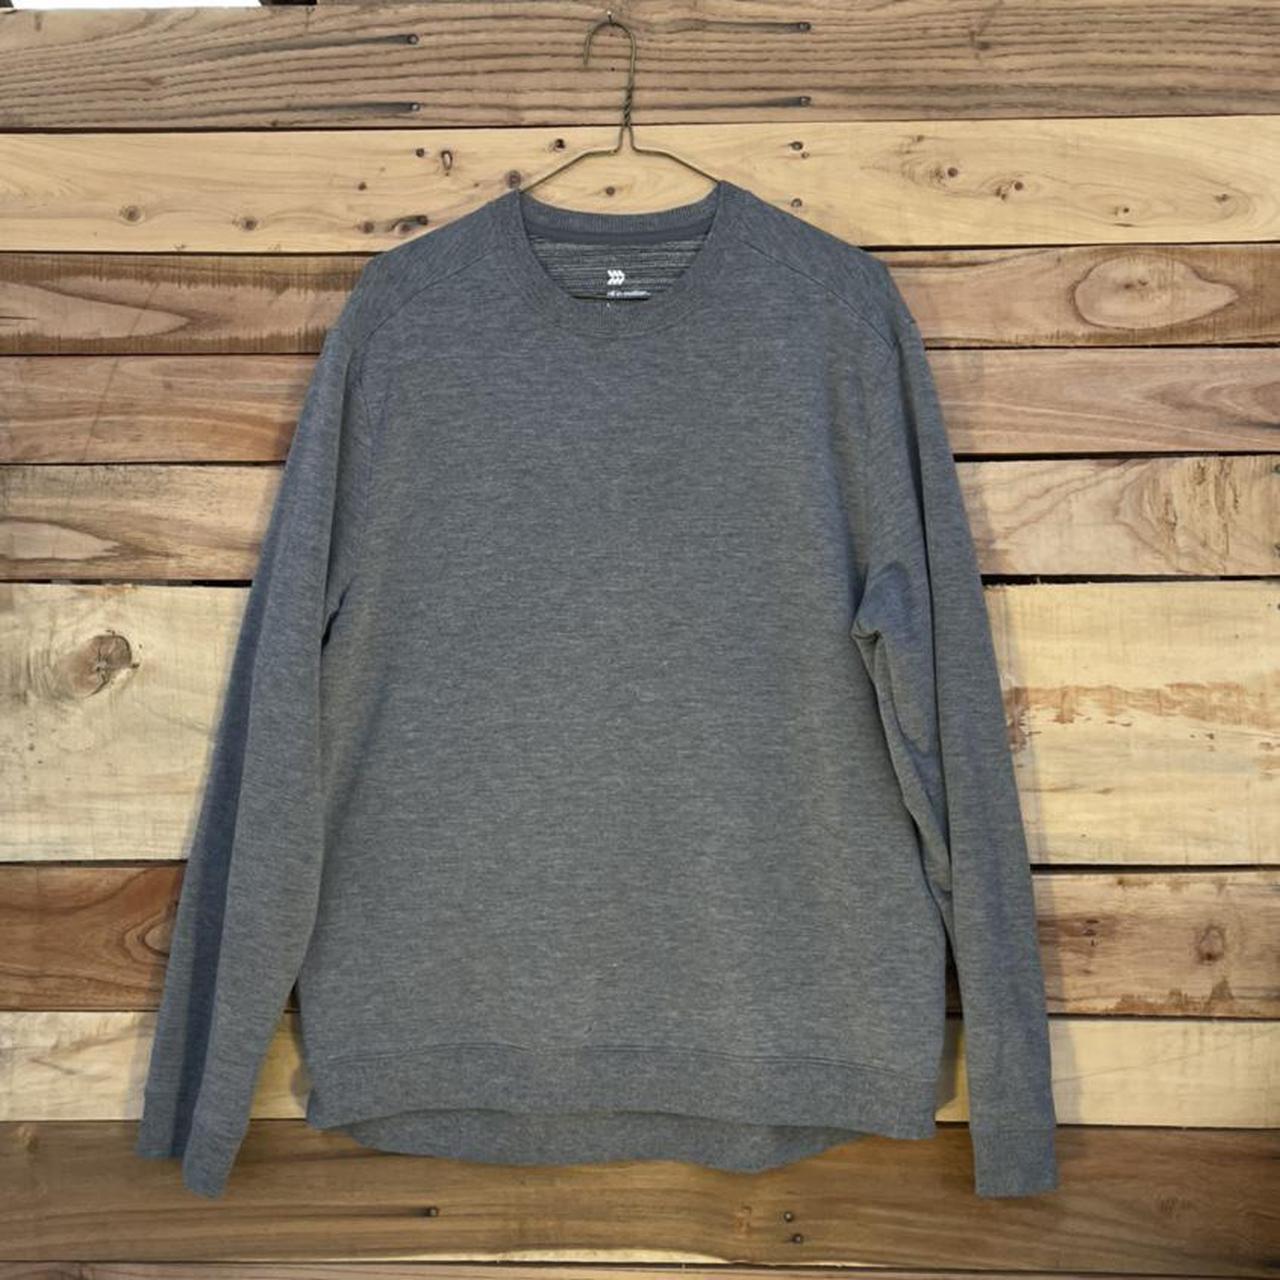 Target Men's Grey Sweatshirt | Depop